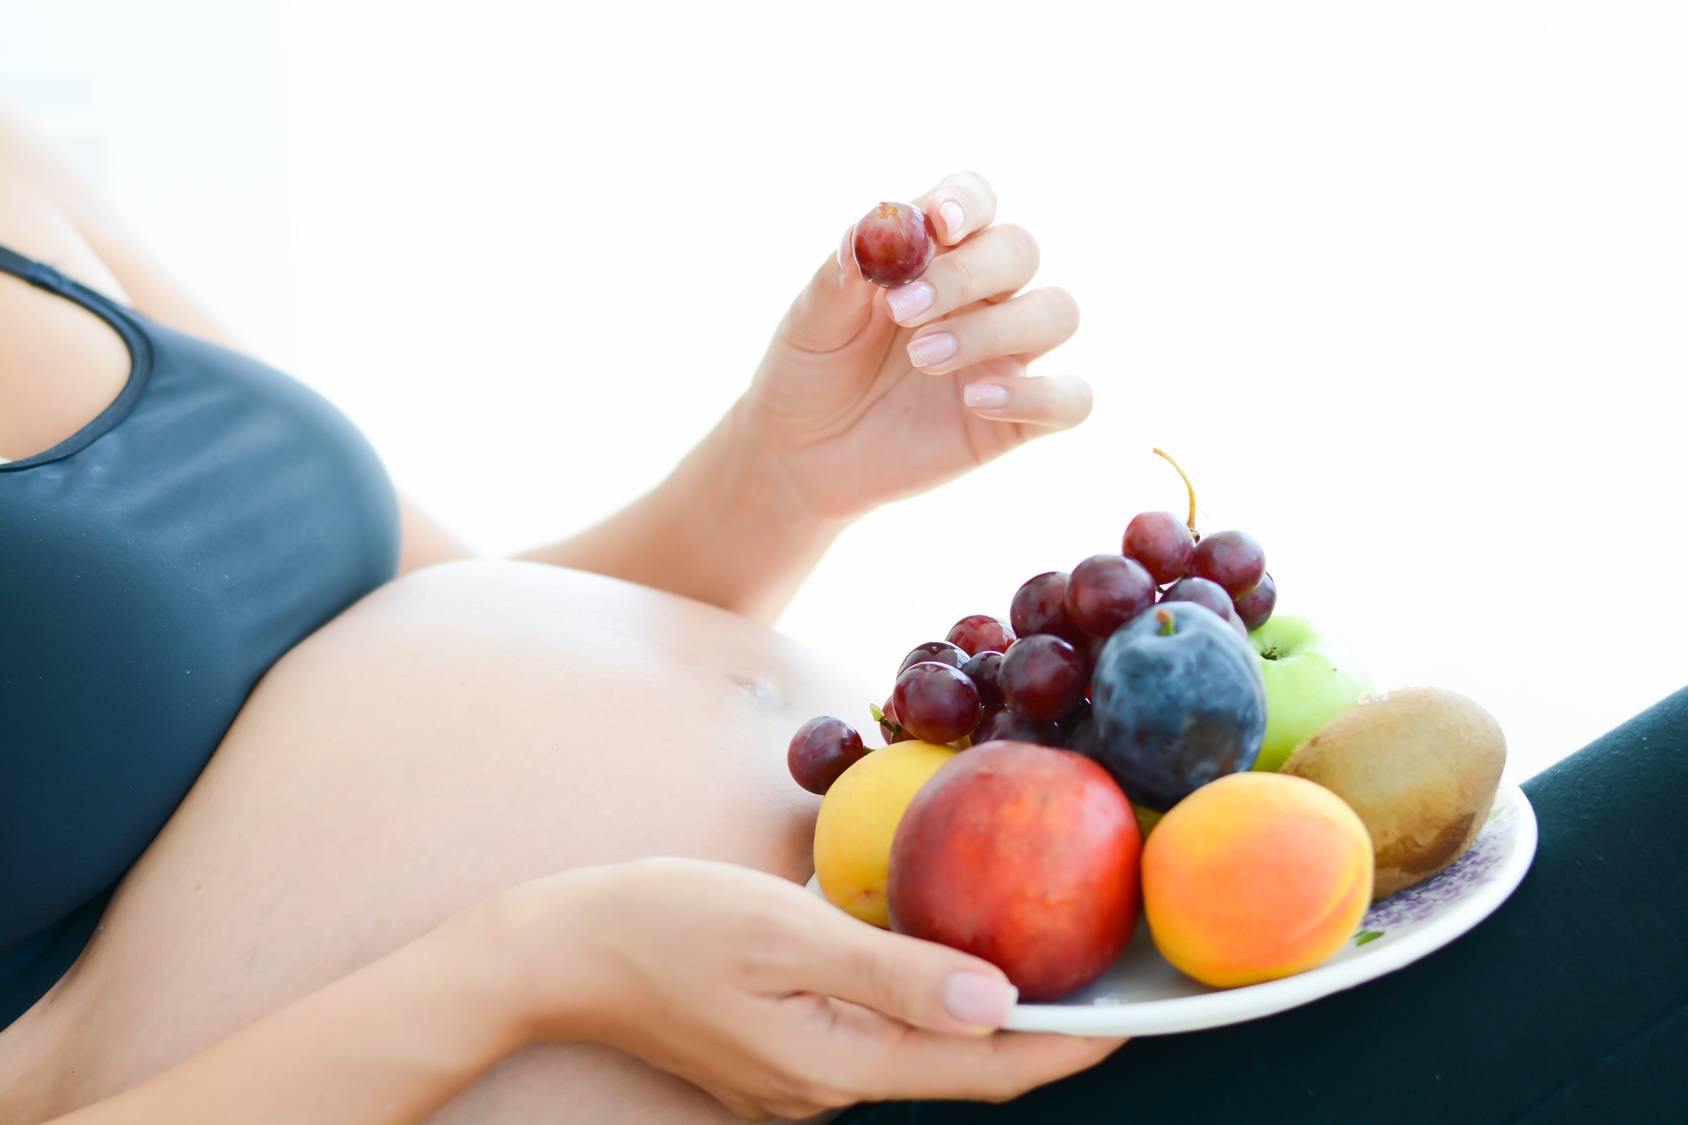 Виноград при беременности: можно ли его есть беременным, почему некоторым нельзя зеленый, кишмиш, польза и вред ягод на ранних сроках, 1, 2, 3 триместр